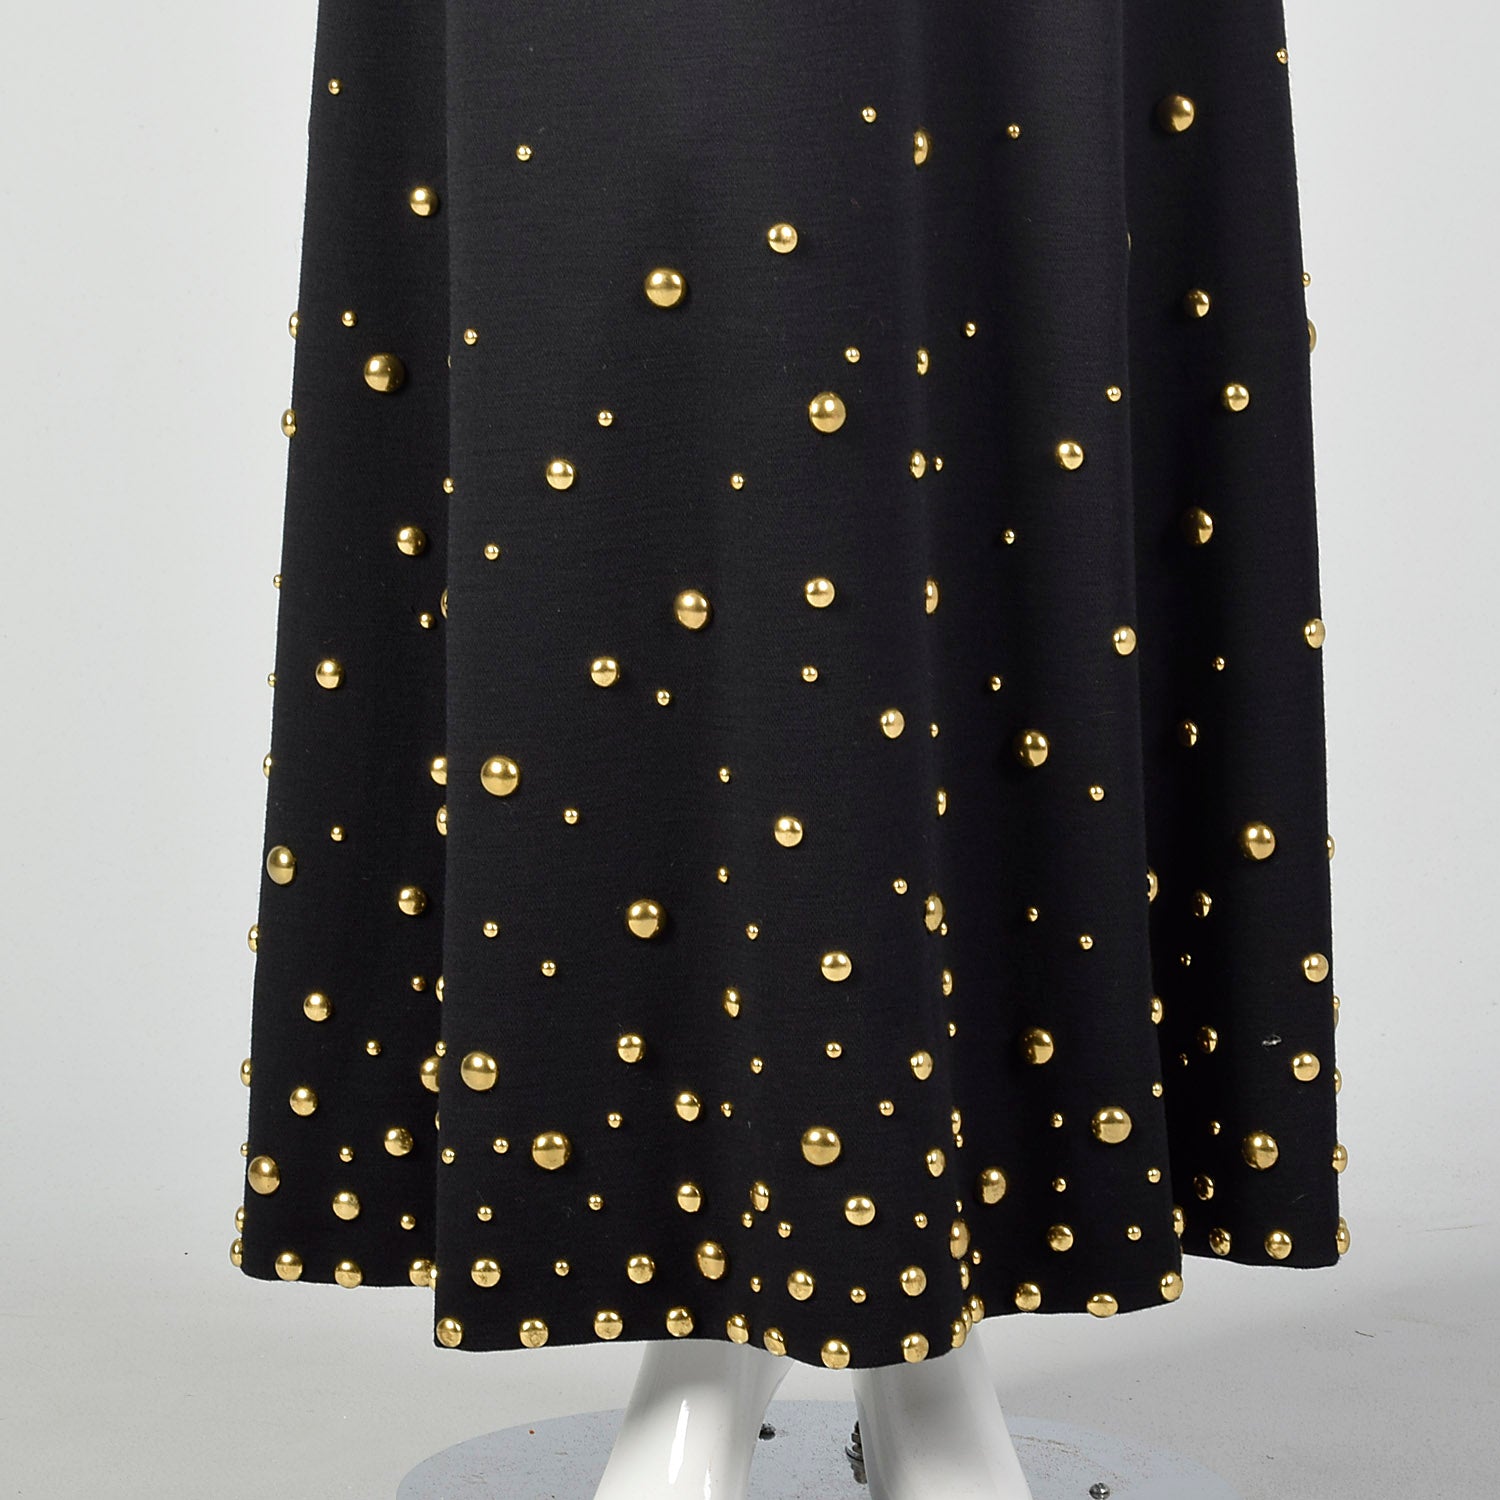 Medium Bergdorf Goodman 1970s Black Knit Dress